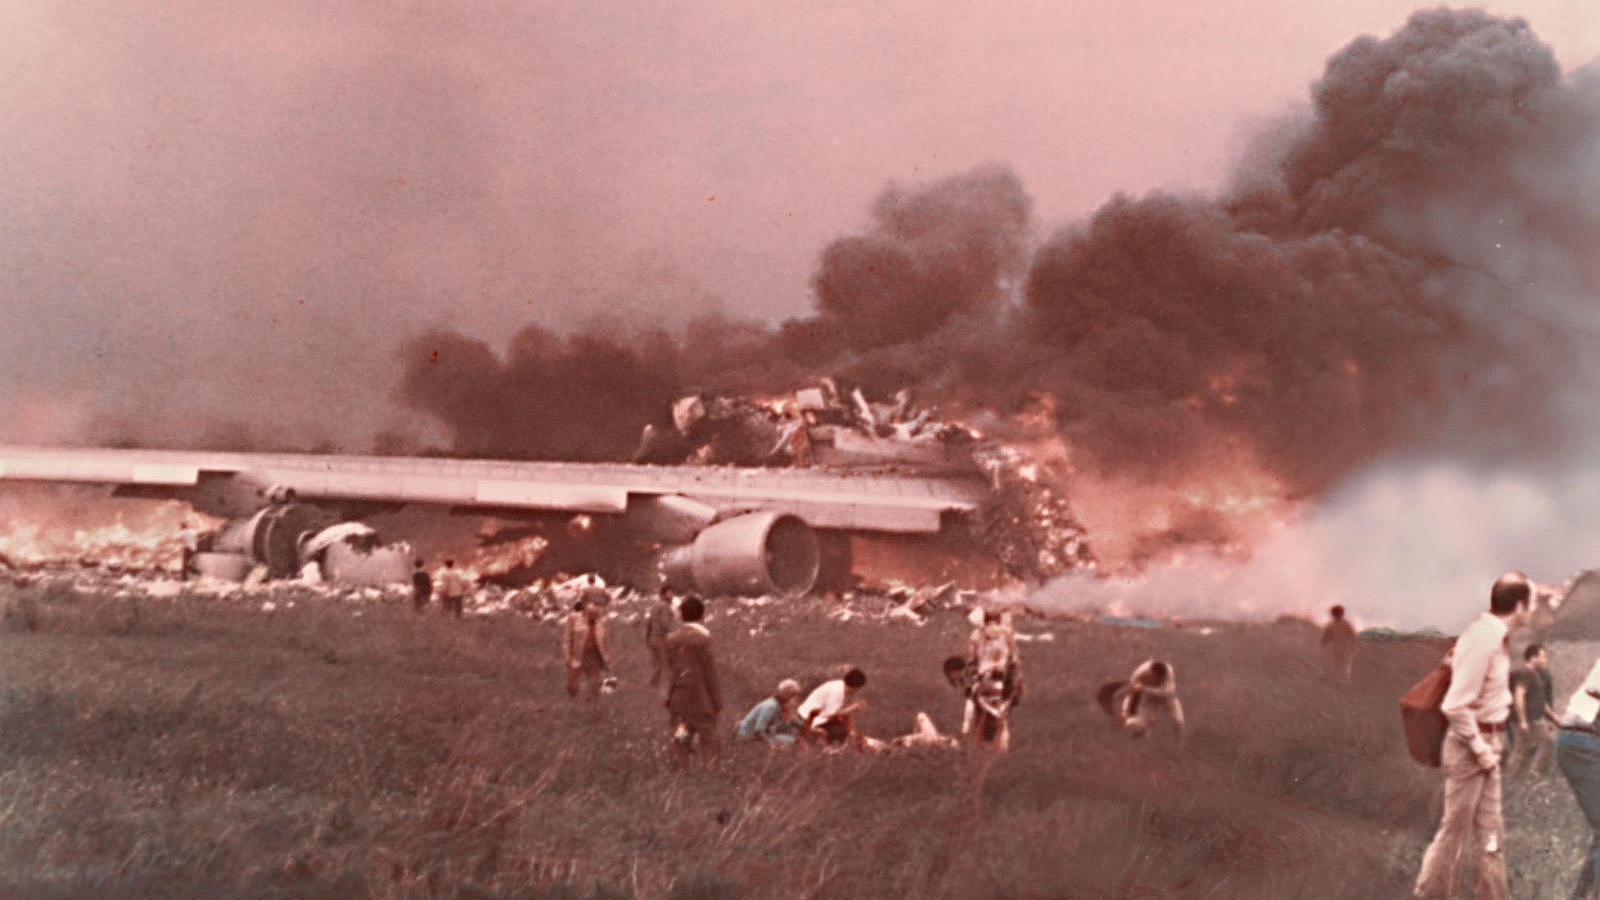 El 27 de marzo de 1977, dos aviones Boeing 747 colisionaron en el Aeropuerto de Los Rodeos (Tenerife Norte en la actualidad), convirtiéndose en el accidente aéreo con mayor número de víctimas mortales de la historia de la aviación